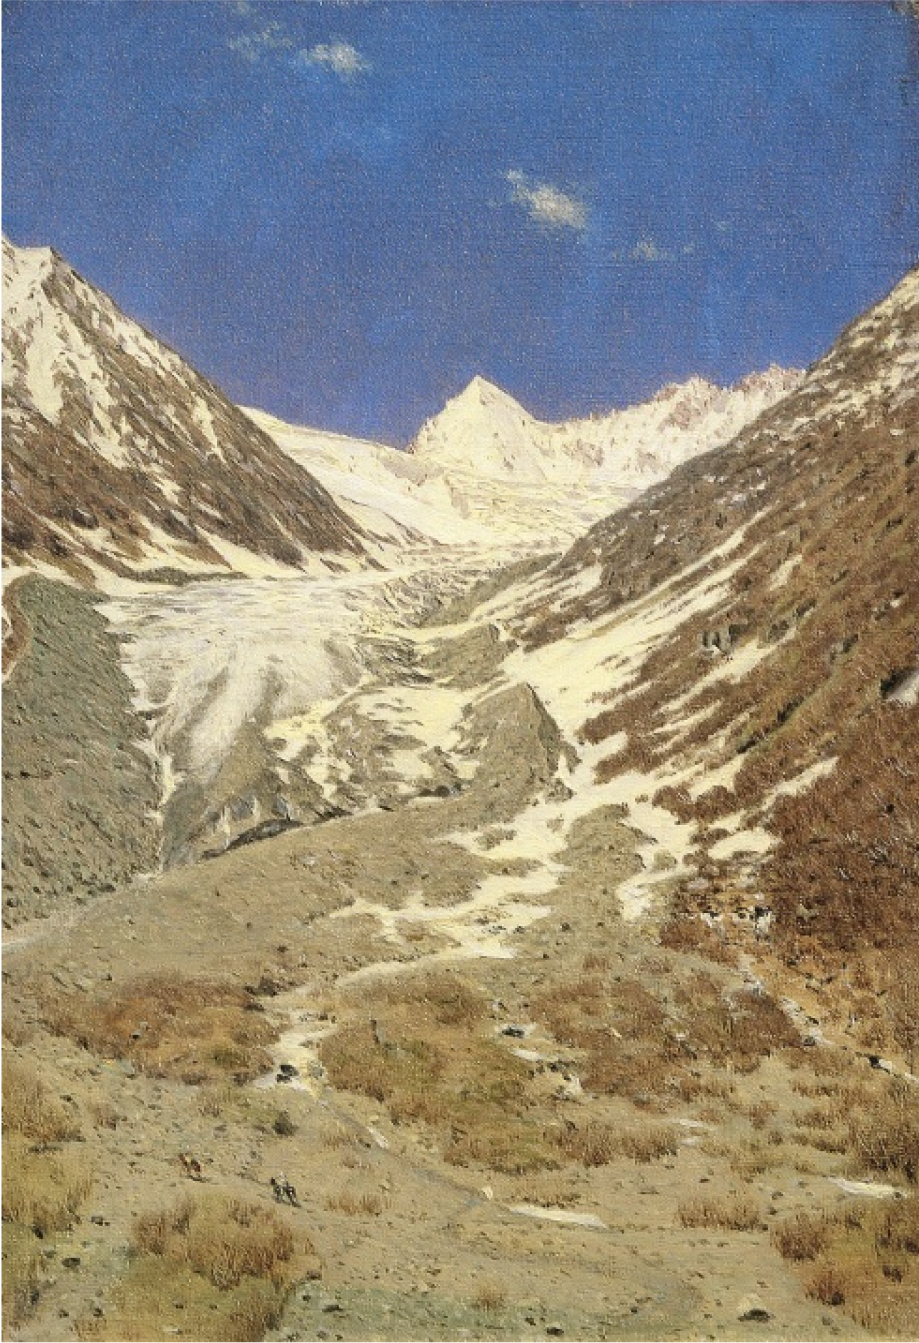 Ледник по дороге из Кашмира в Ладак.